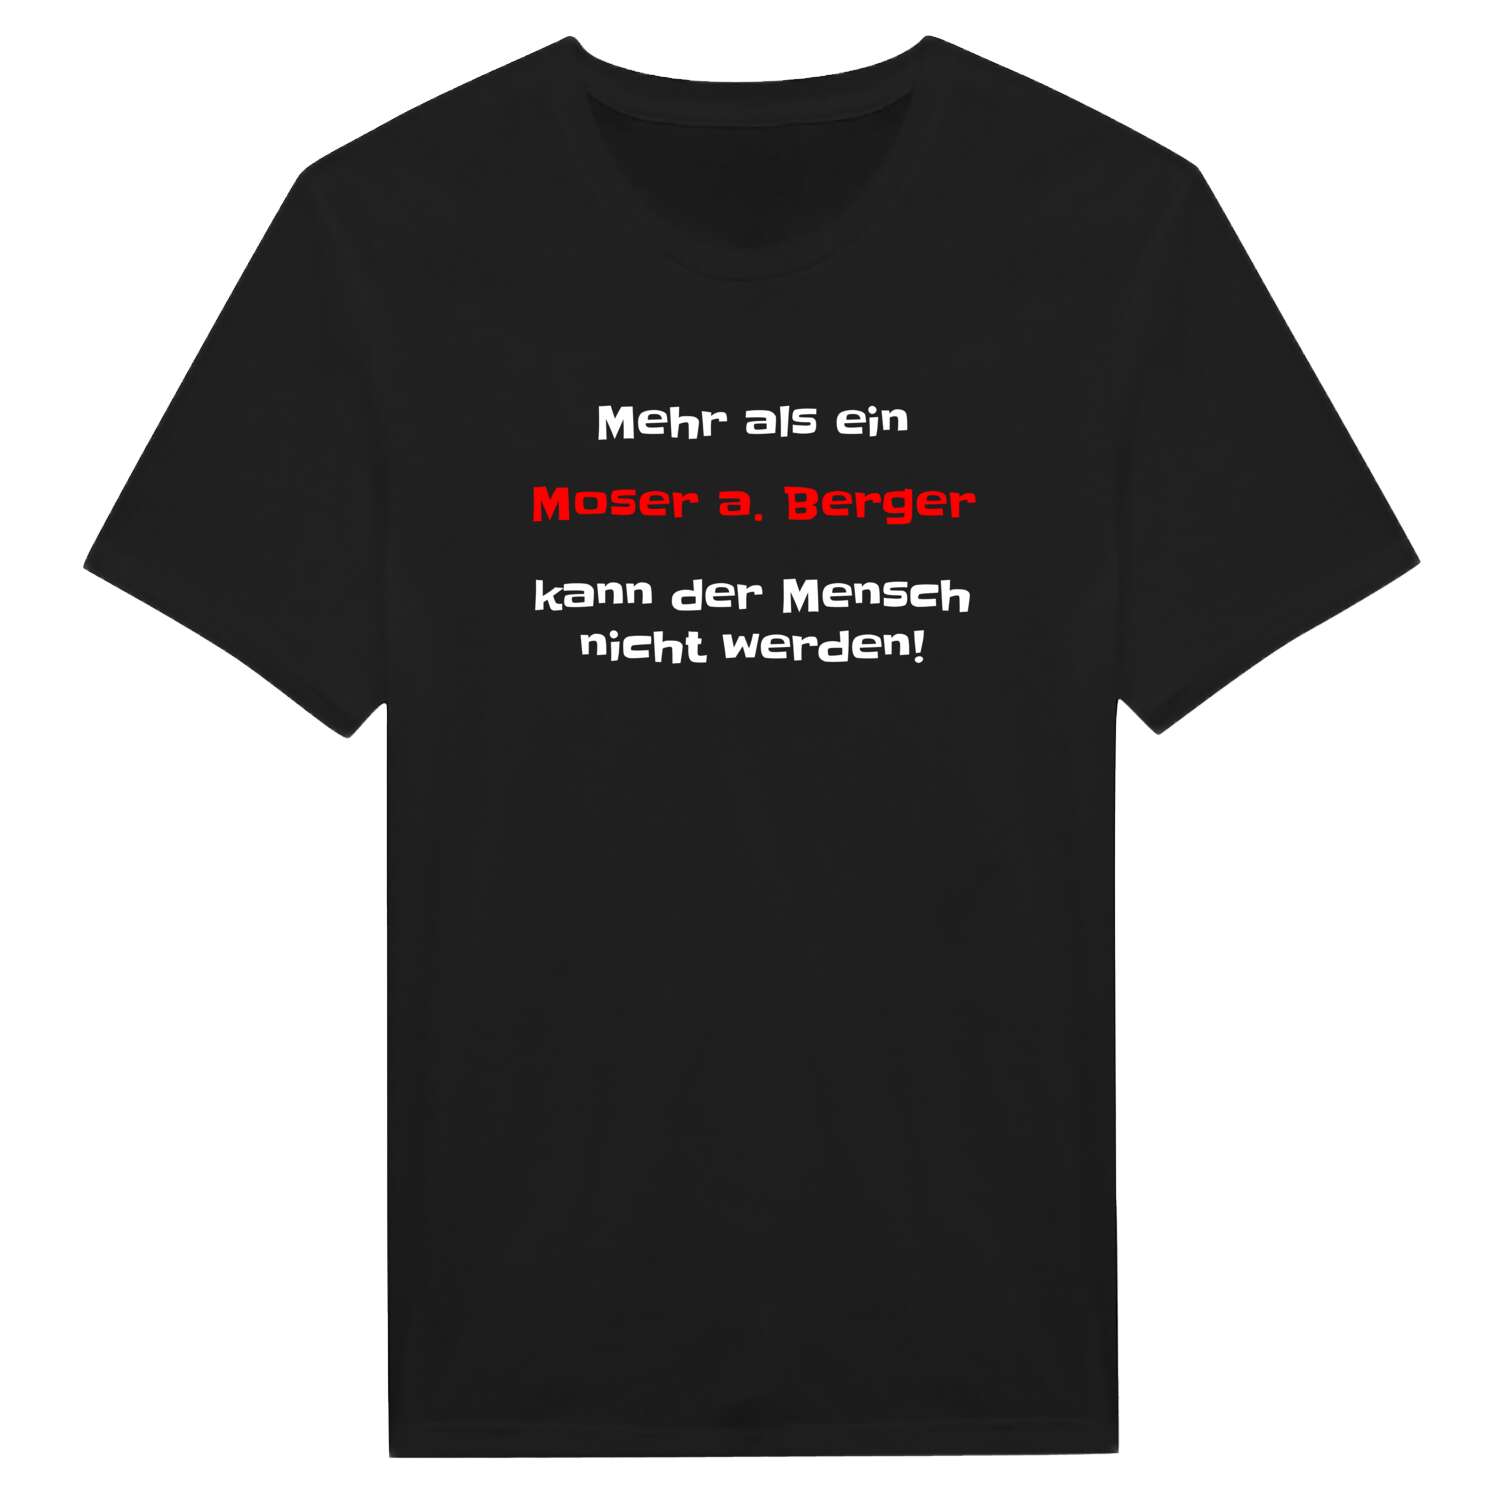 Moser a. Berg T-Shirt »Mehr als ein«